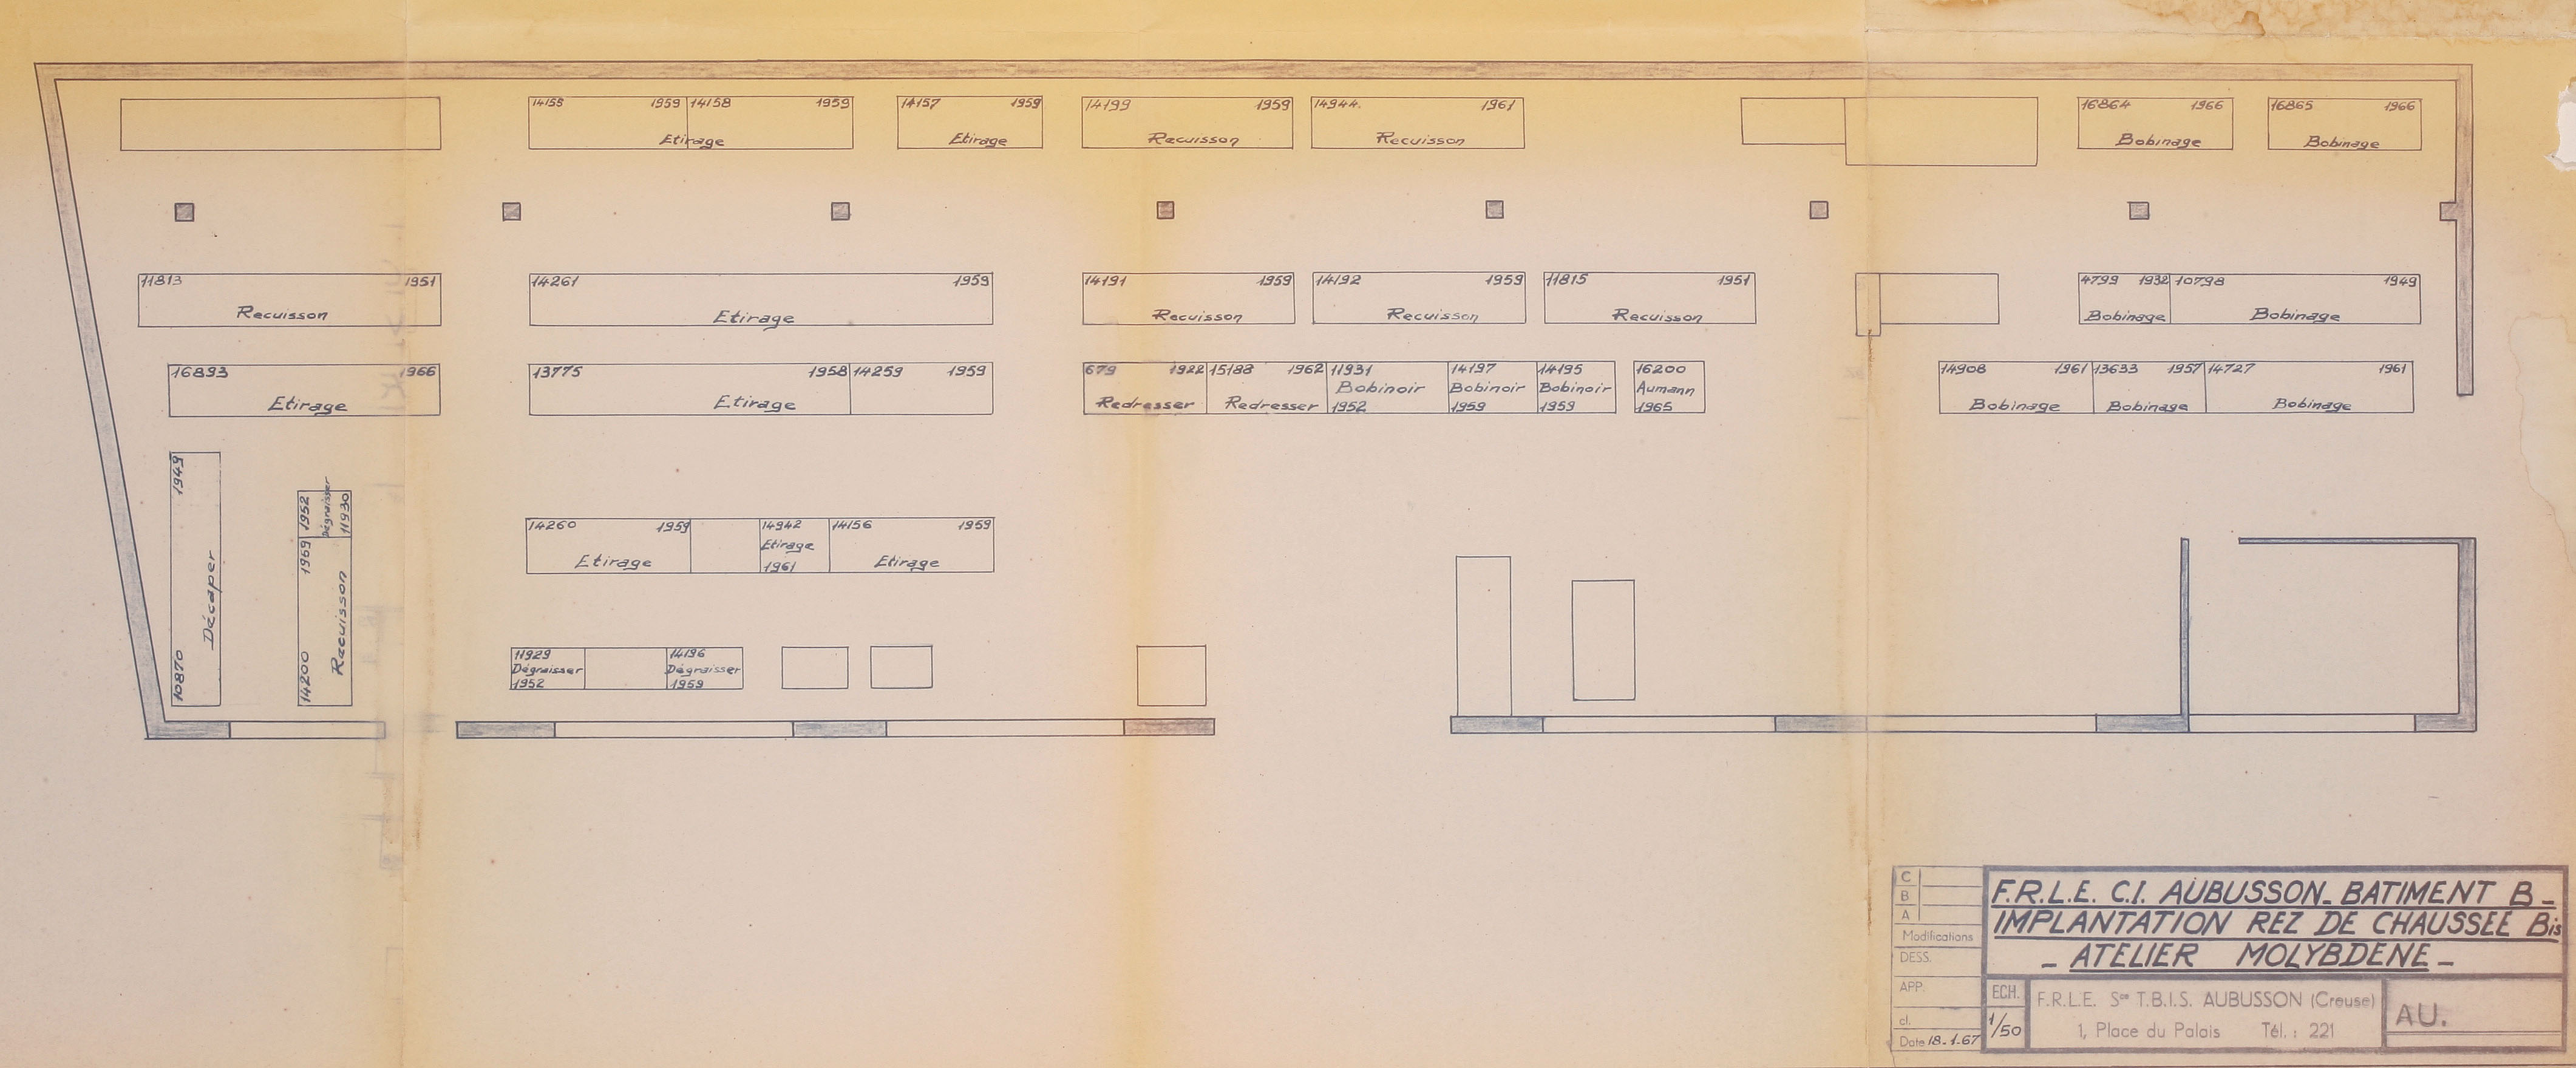 Plan du rez-de-chaussée du bâtiment B de la FRLE (1966), avec l'atelier Molybdène (du nom du métal utilisé pour fabriquer les filaments des lampes à incandescence) (AC Aubusson)